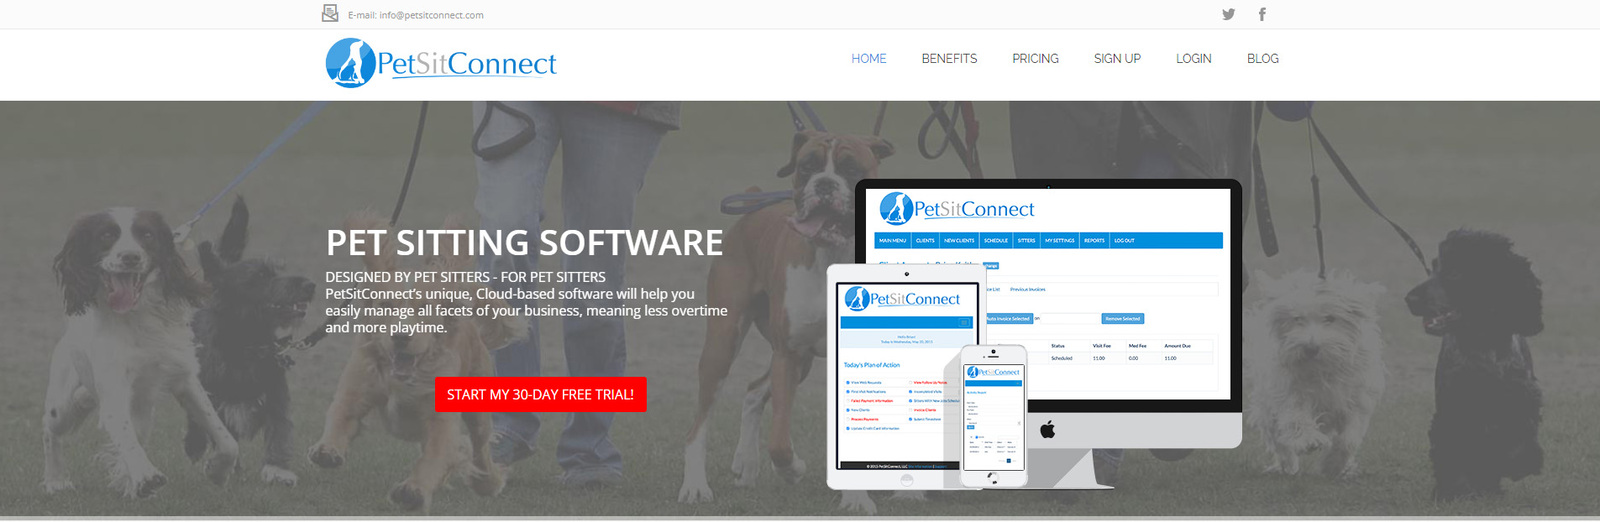 لقطة من PetSitConnect، وهو خيار تطبيق مجالسة الحيوانات الأليفة الأعلى تقييمًا.